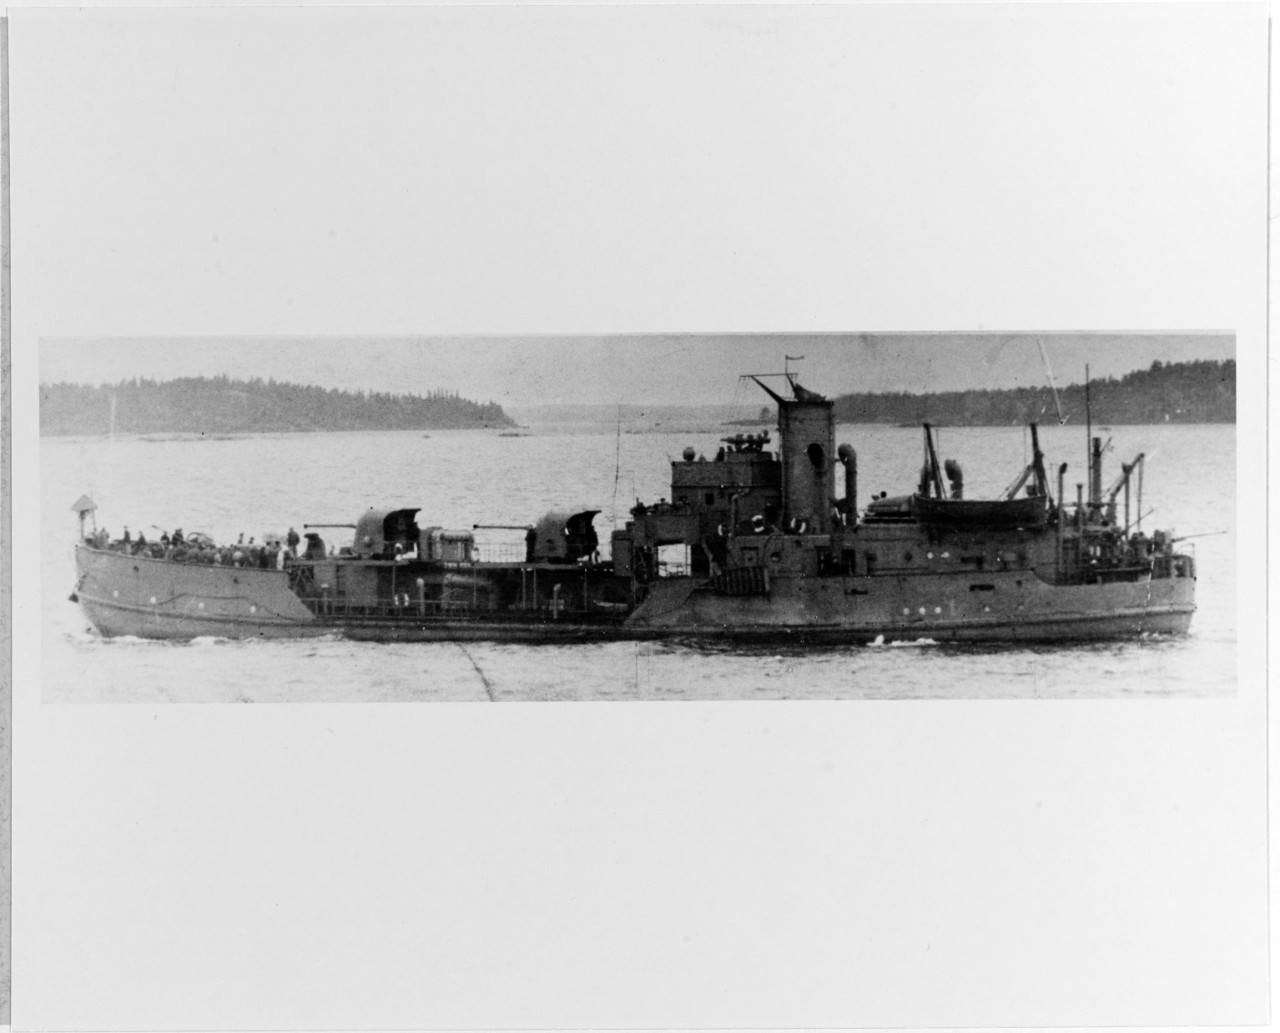 MOSKVA-Class Gunboat